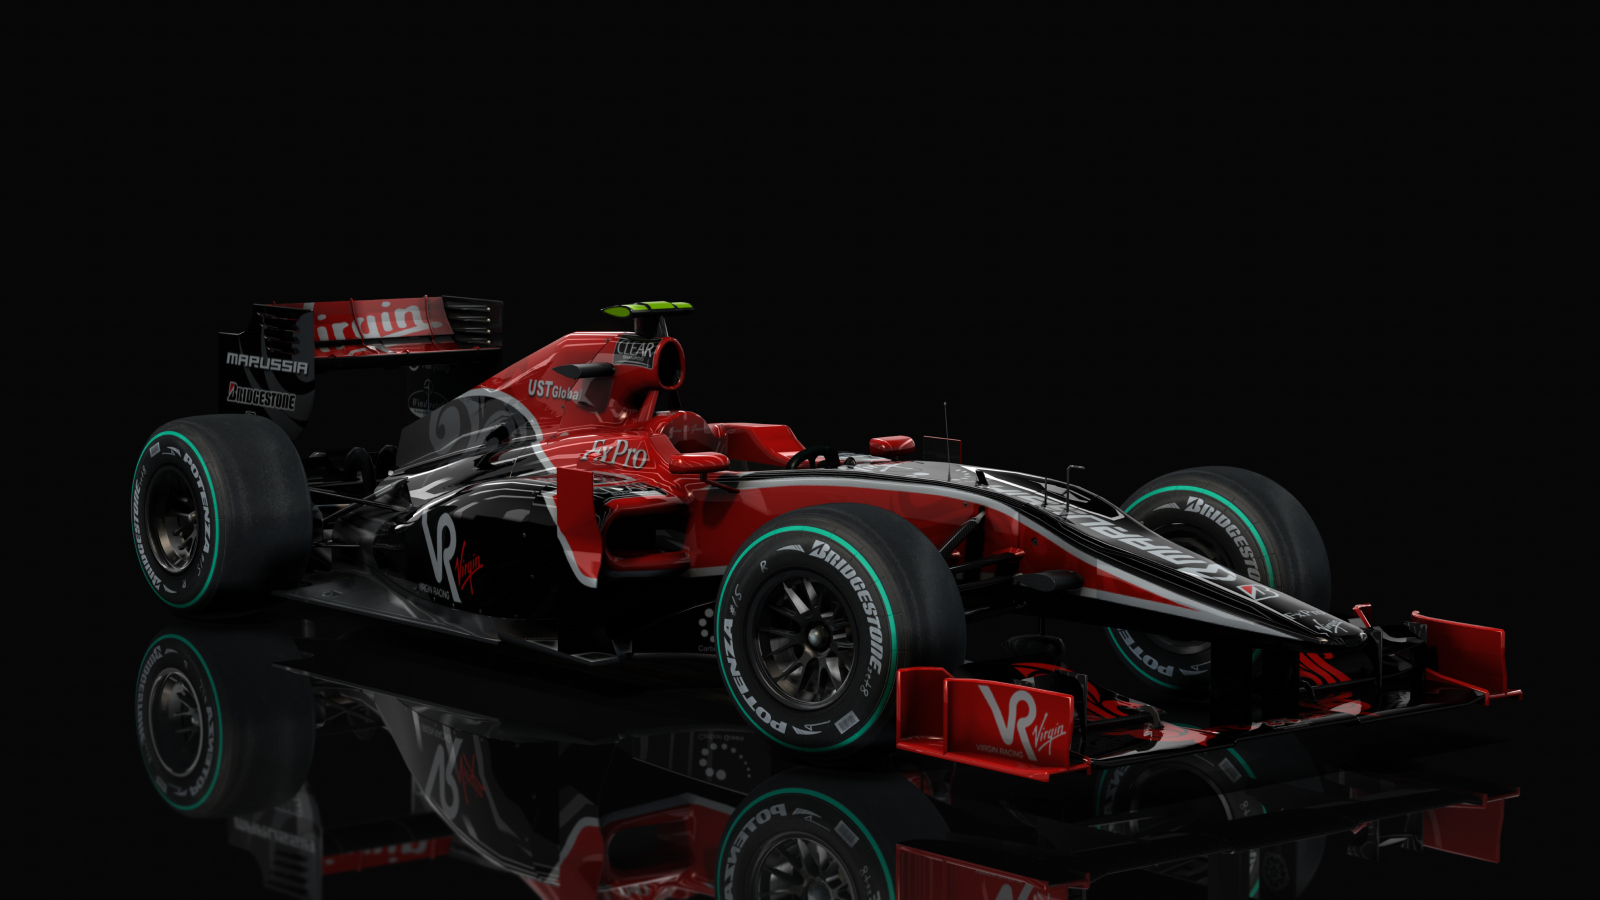 F1 2010 - Virgin VR-01, skin diGrassi